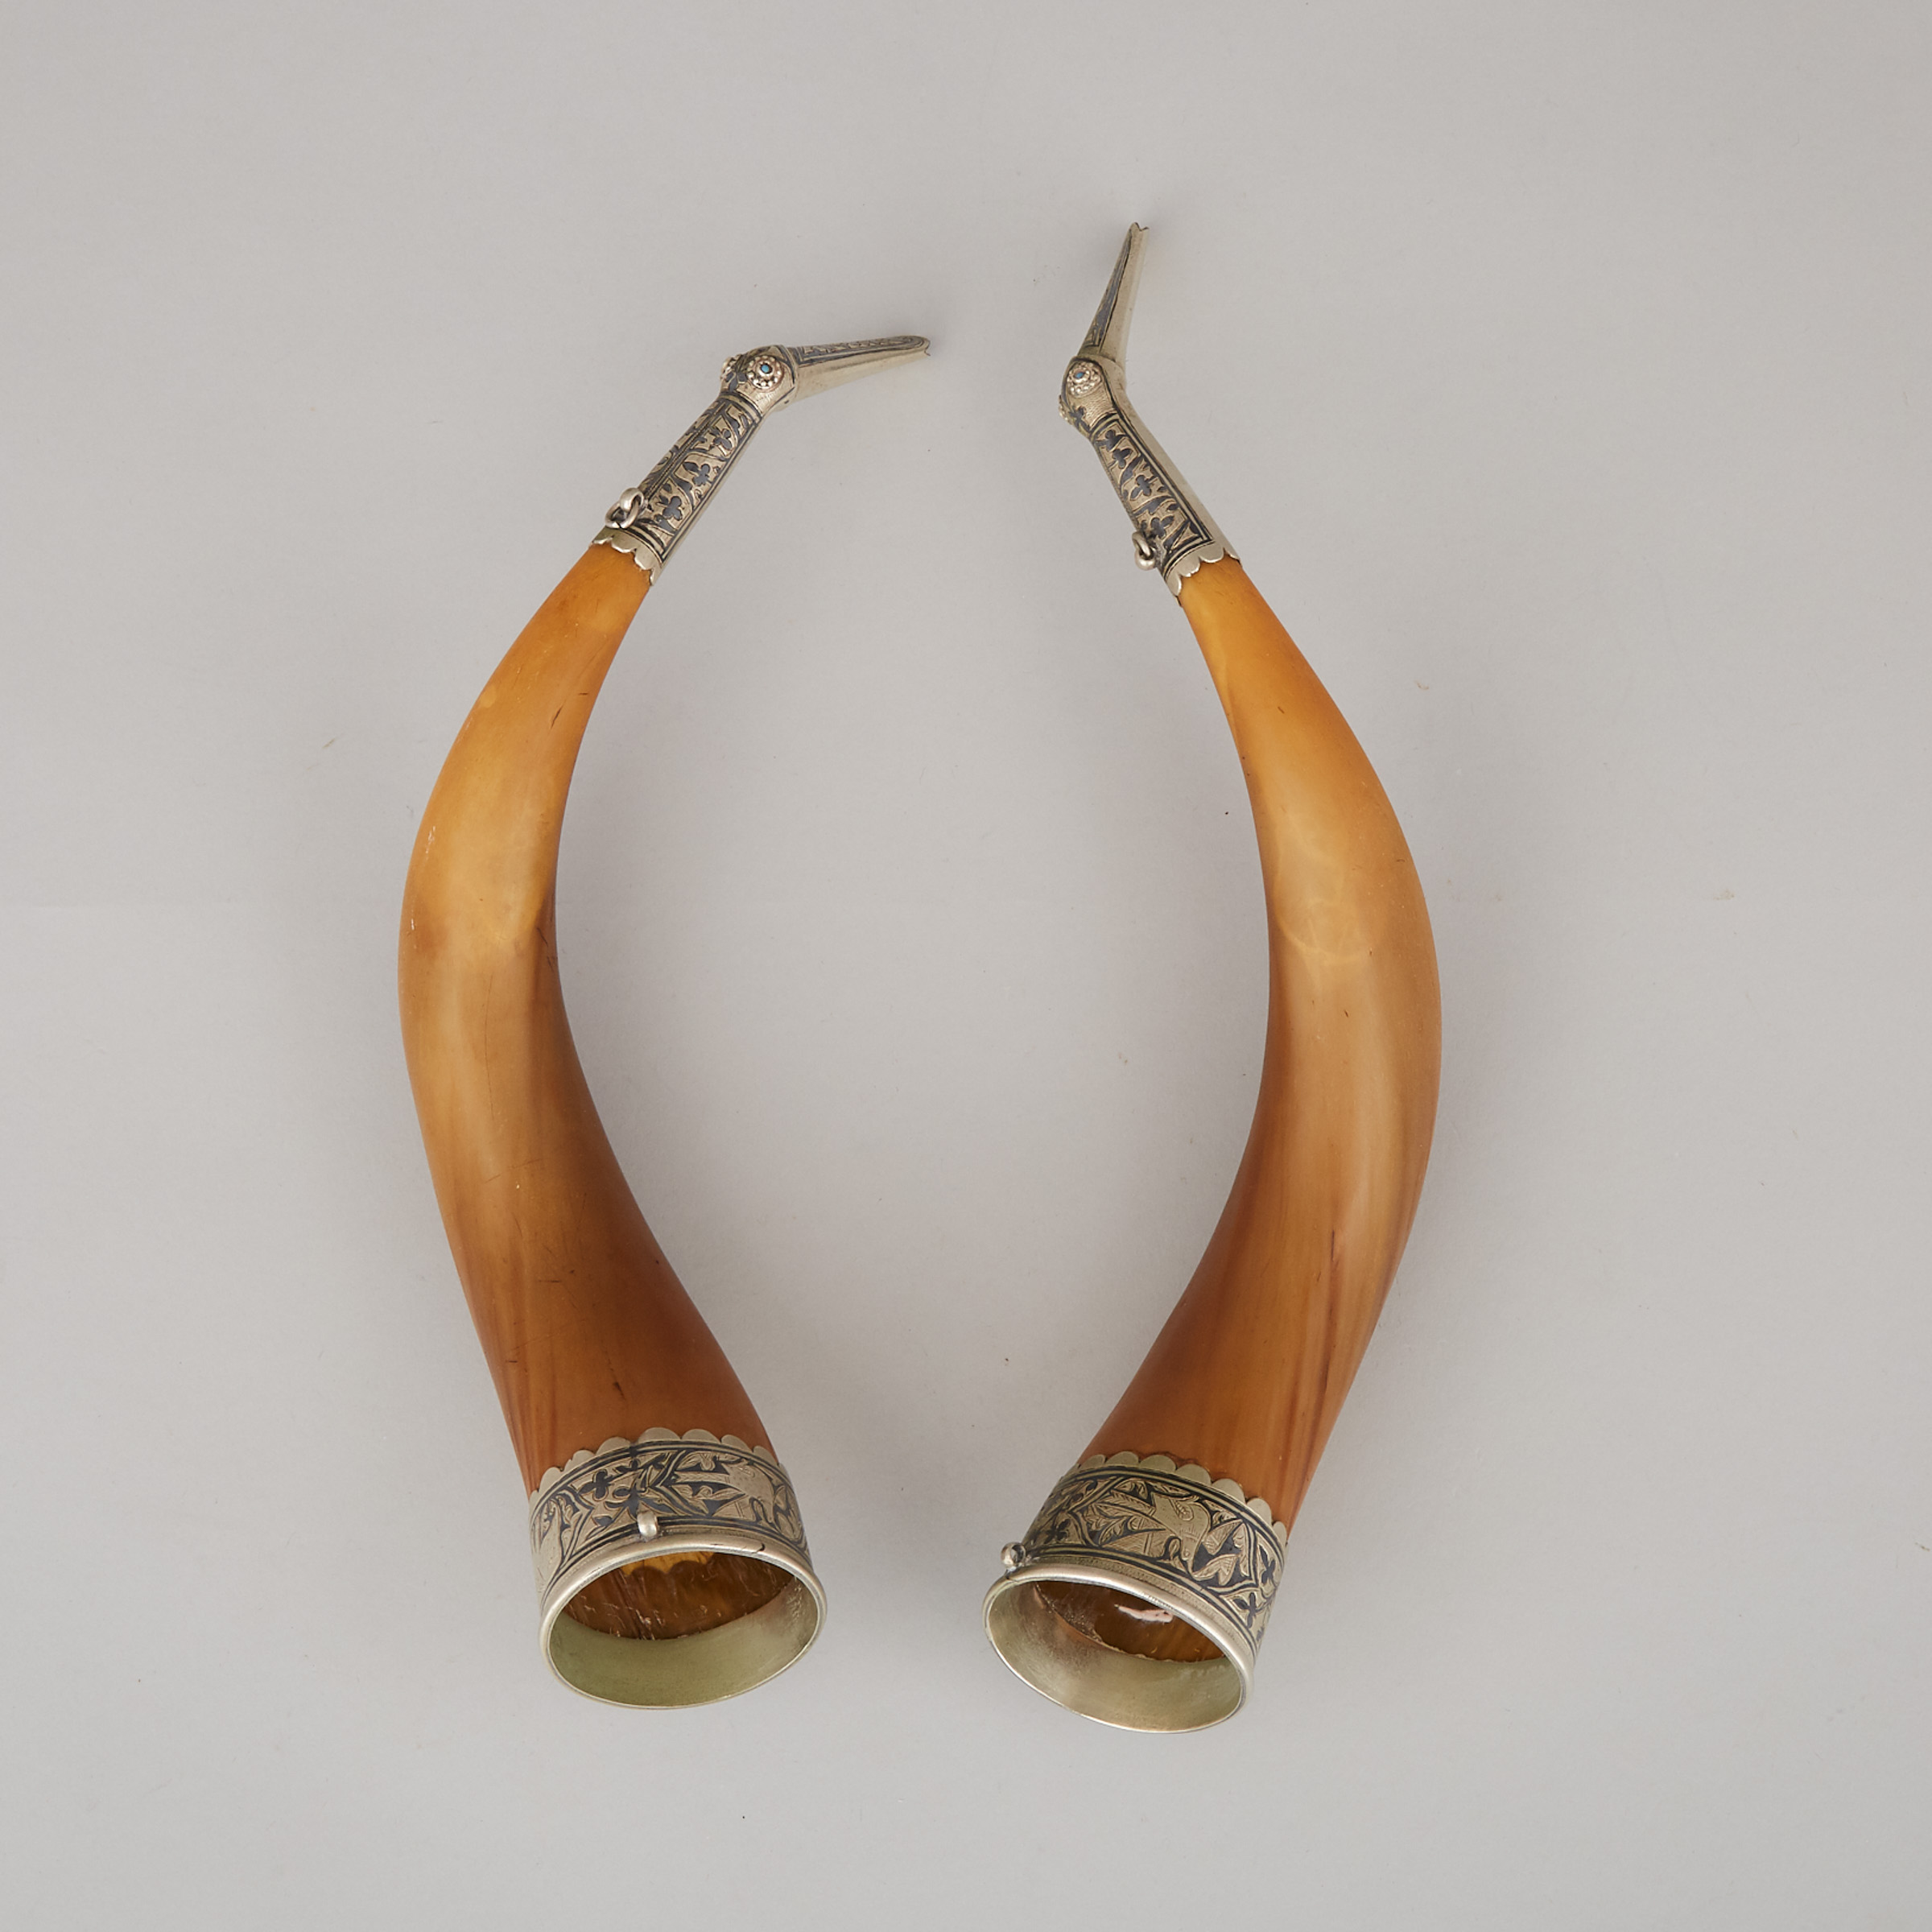 Pair of Norwegian 'Viking' Drinking Horns, Stavanger, early 20th century